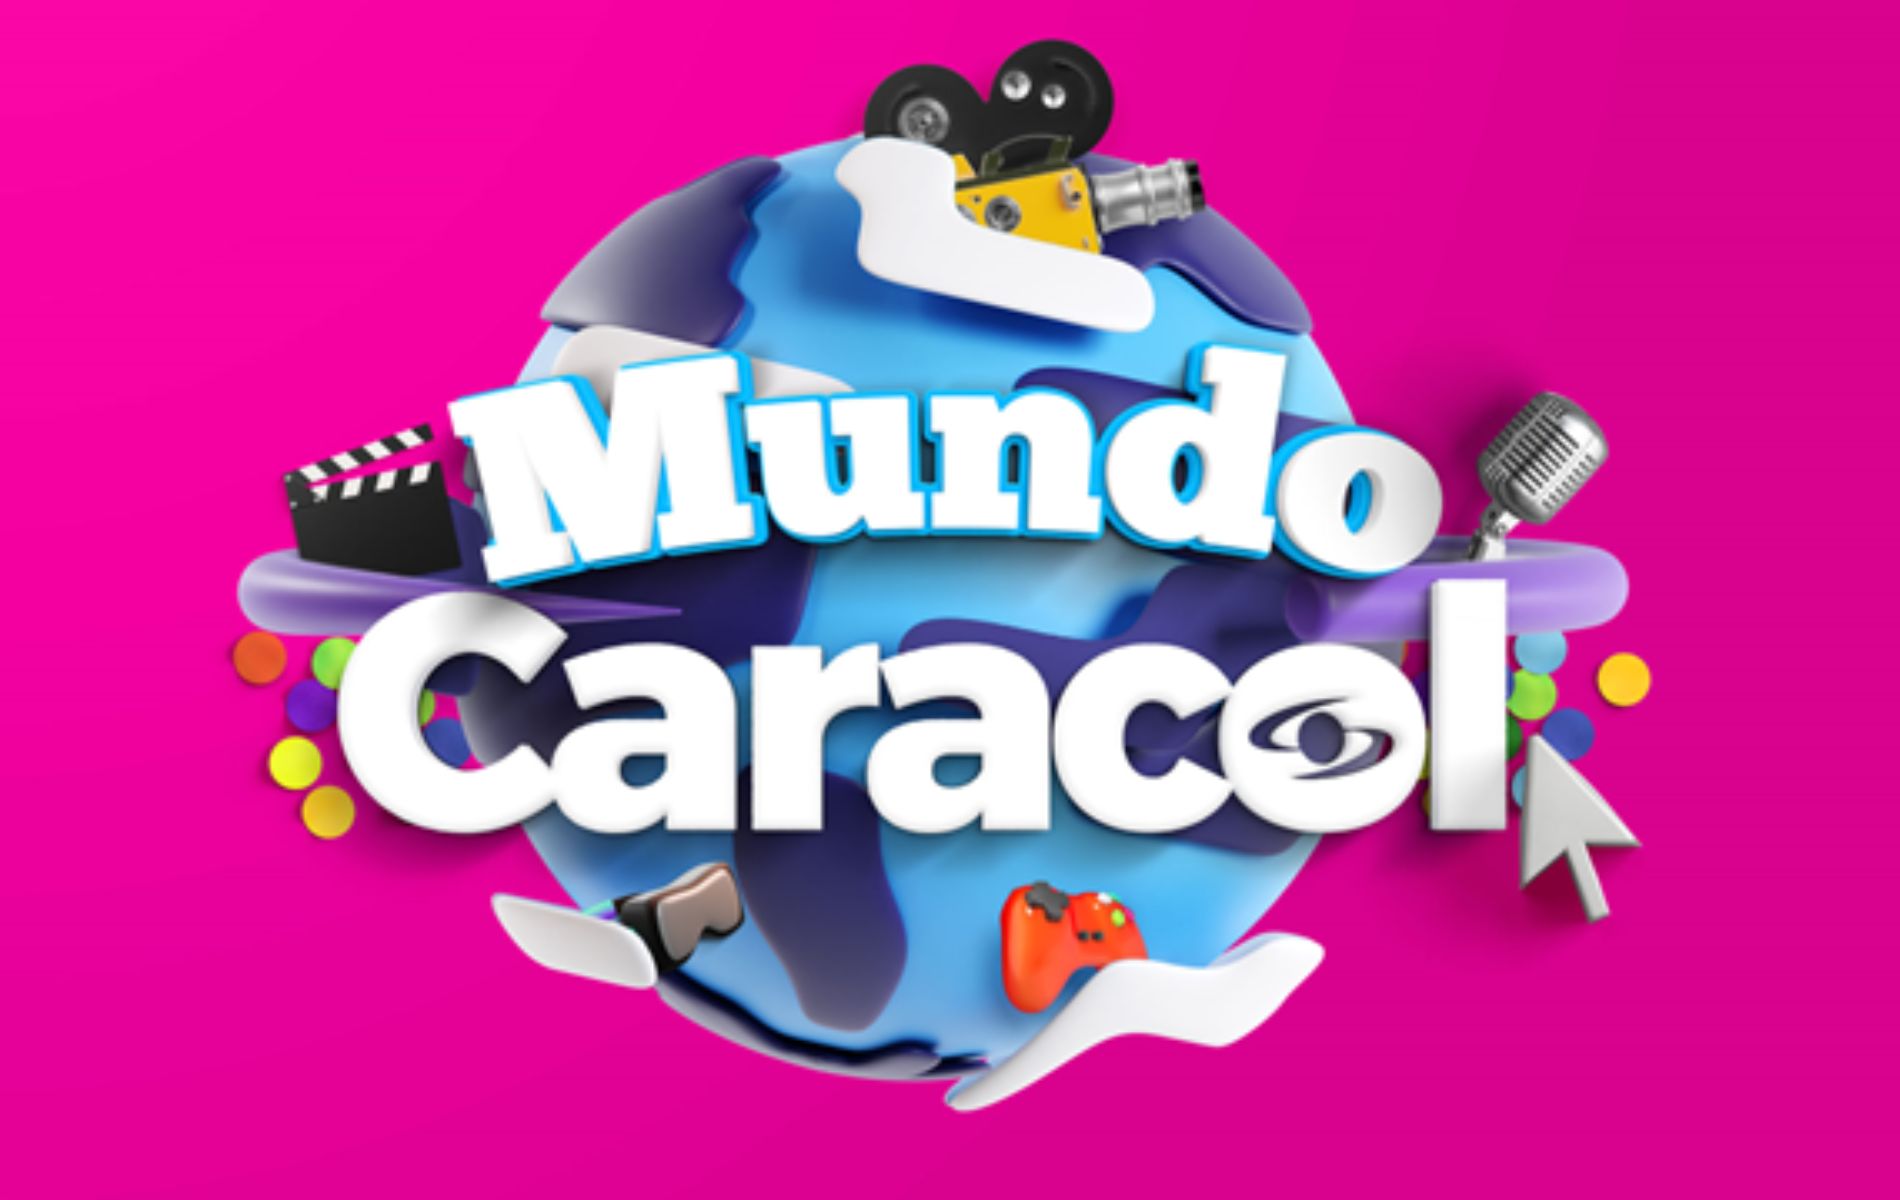 Caracol Televisión lanza el videojuego Mundo Caracol en Roblox en Feria del Libro.